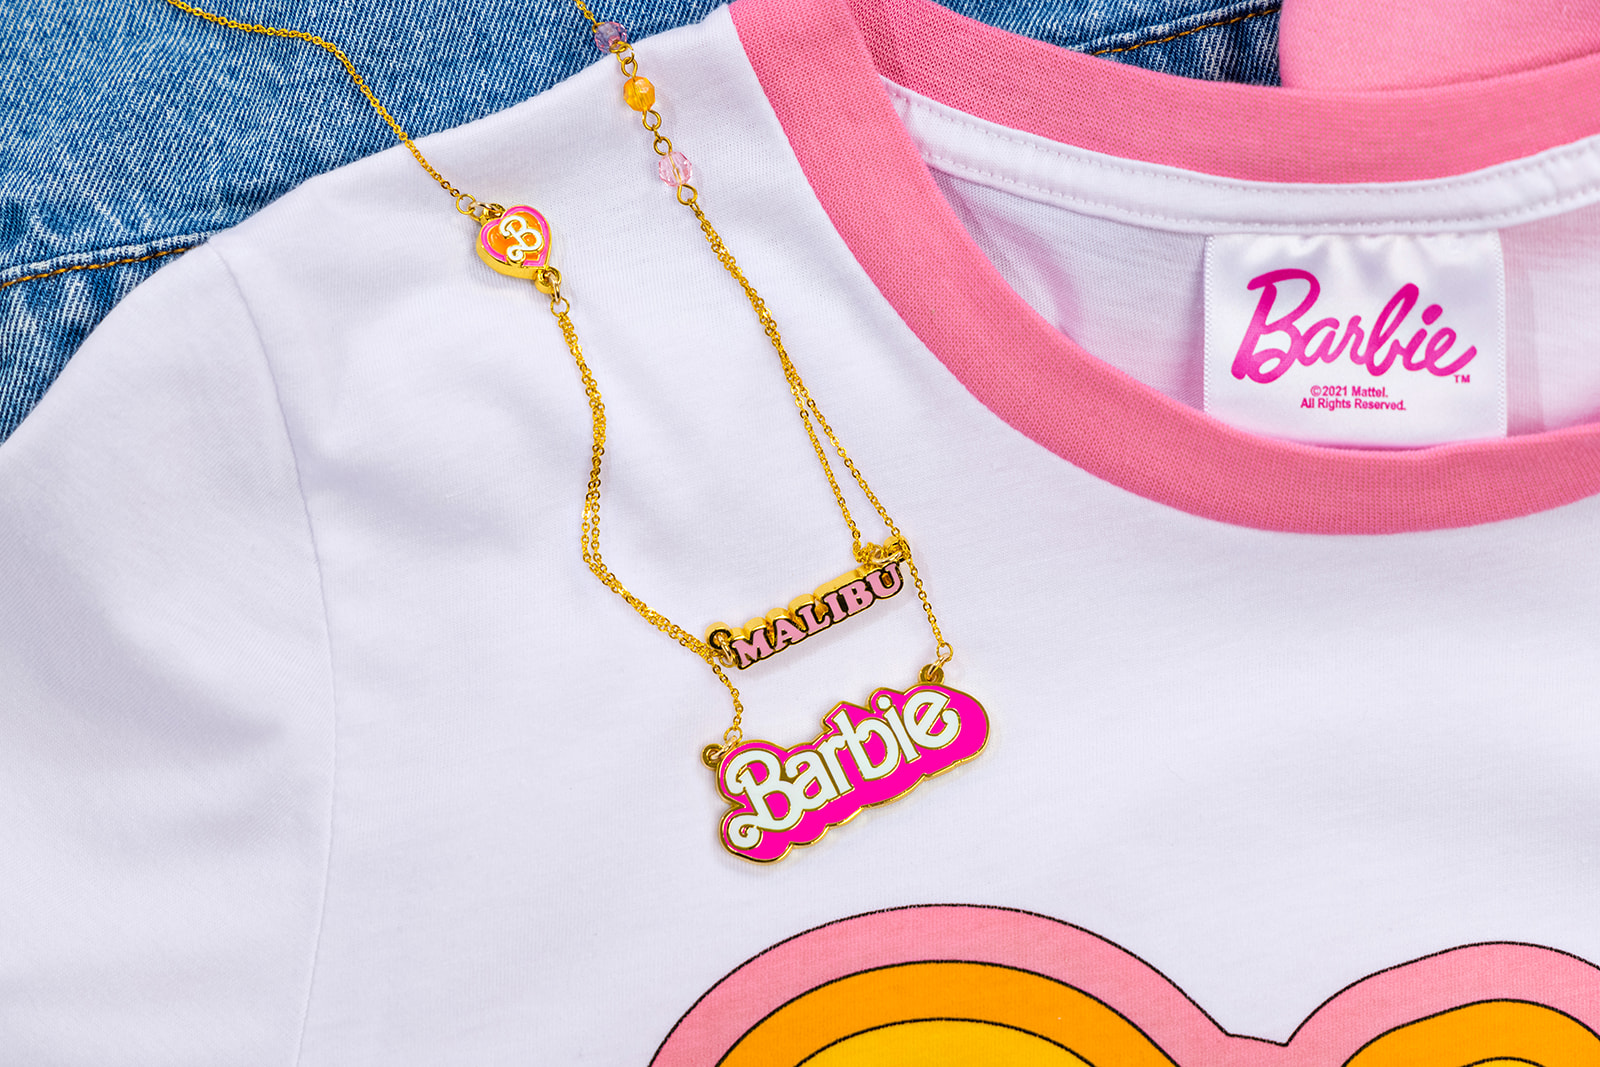 Barbie Malibu Tour 2021 exclusive necklaces